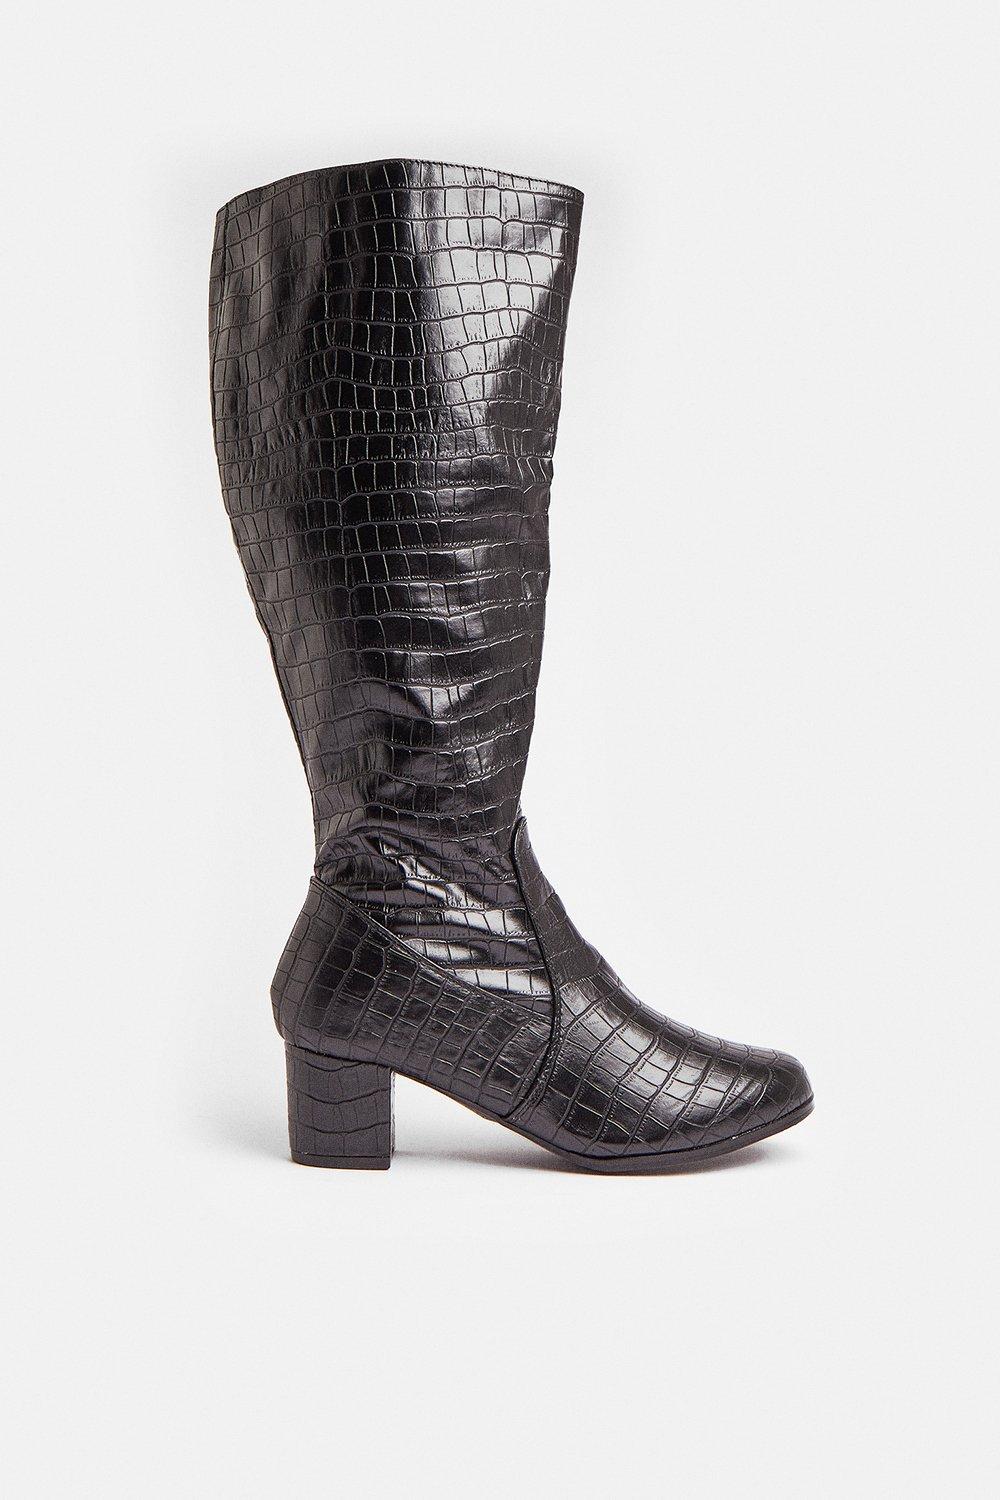 croc knee high block heel boots